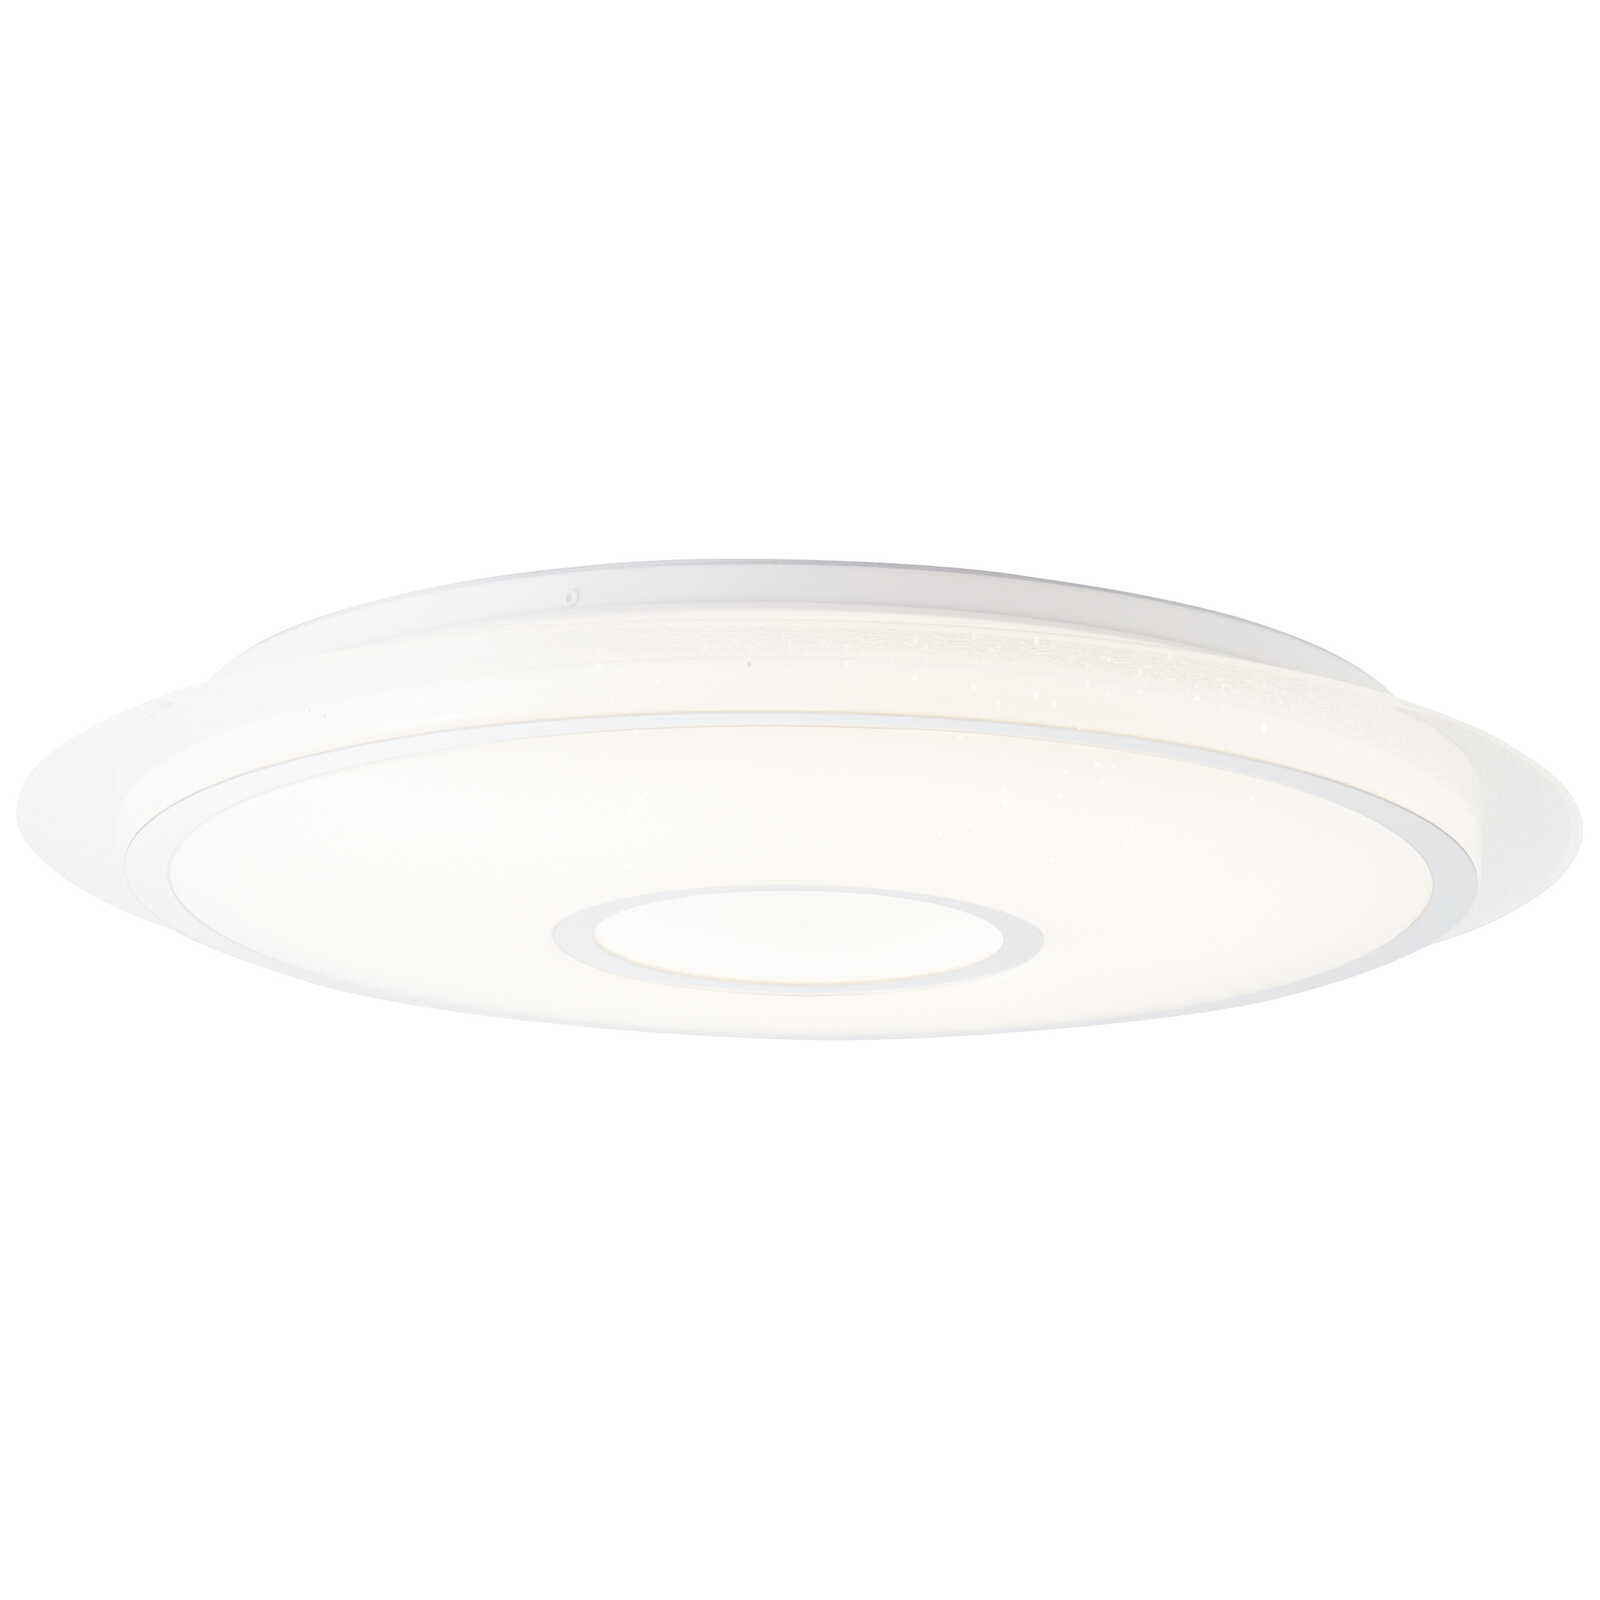             Plastic ceiling light - Michel - White
        